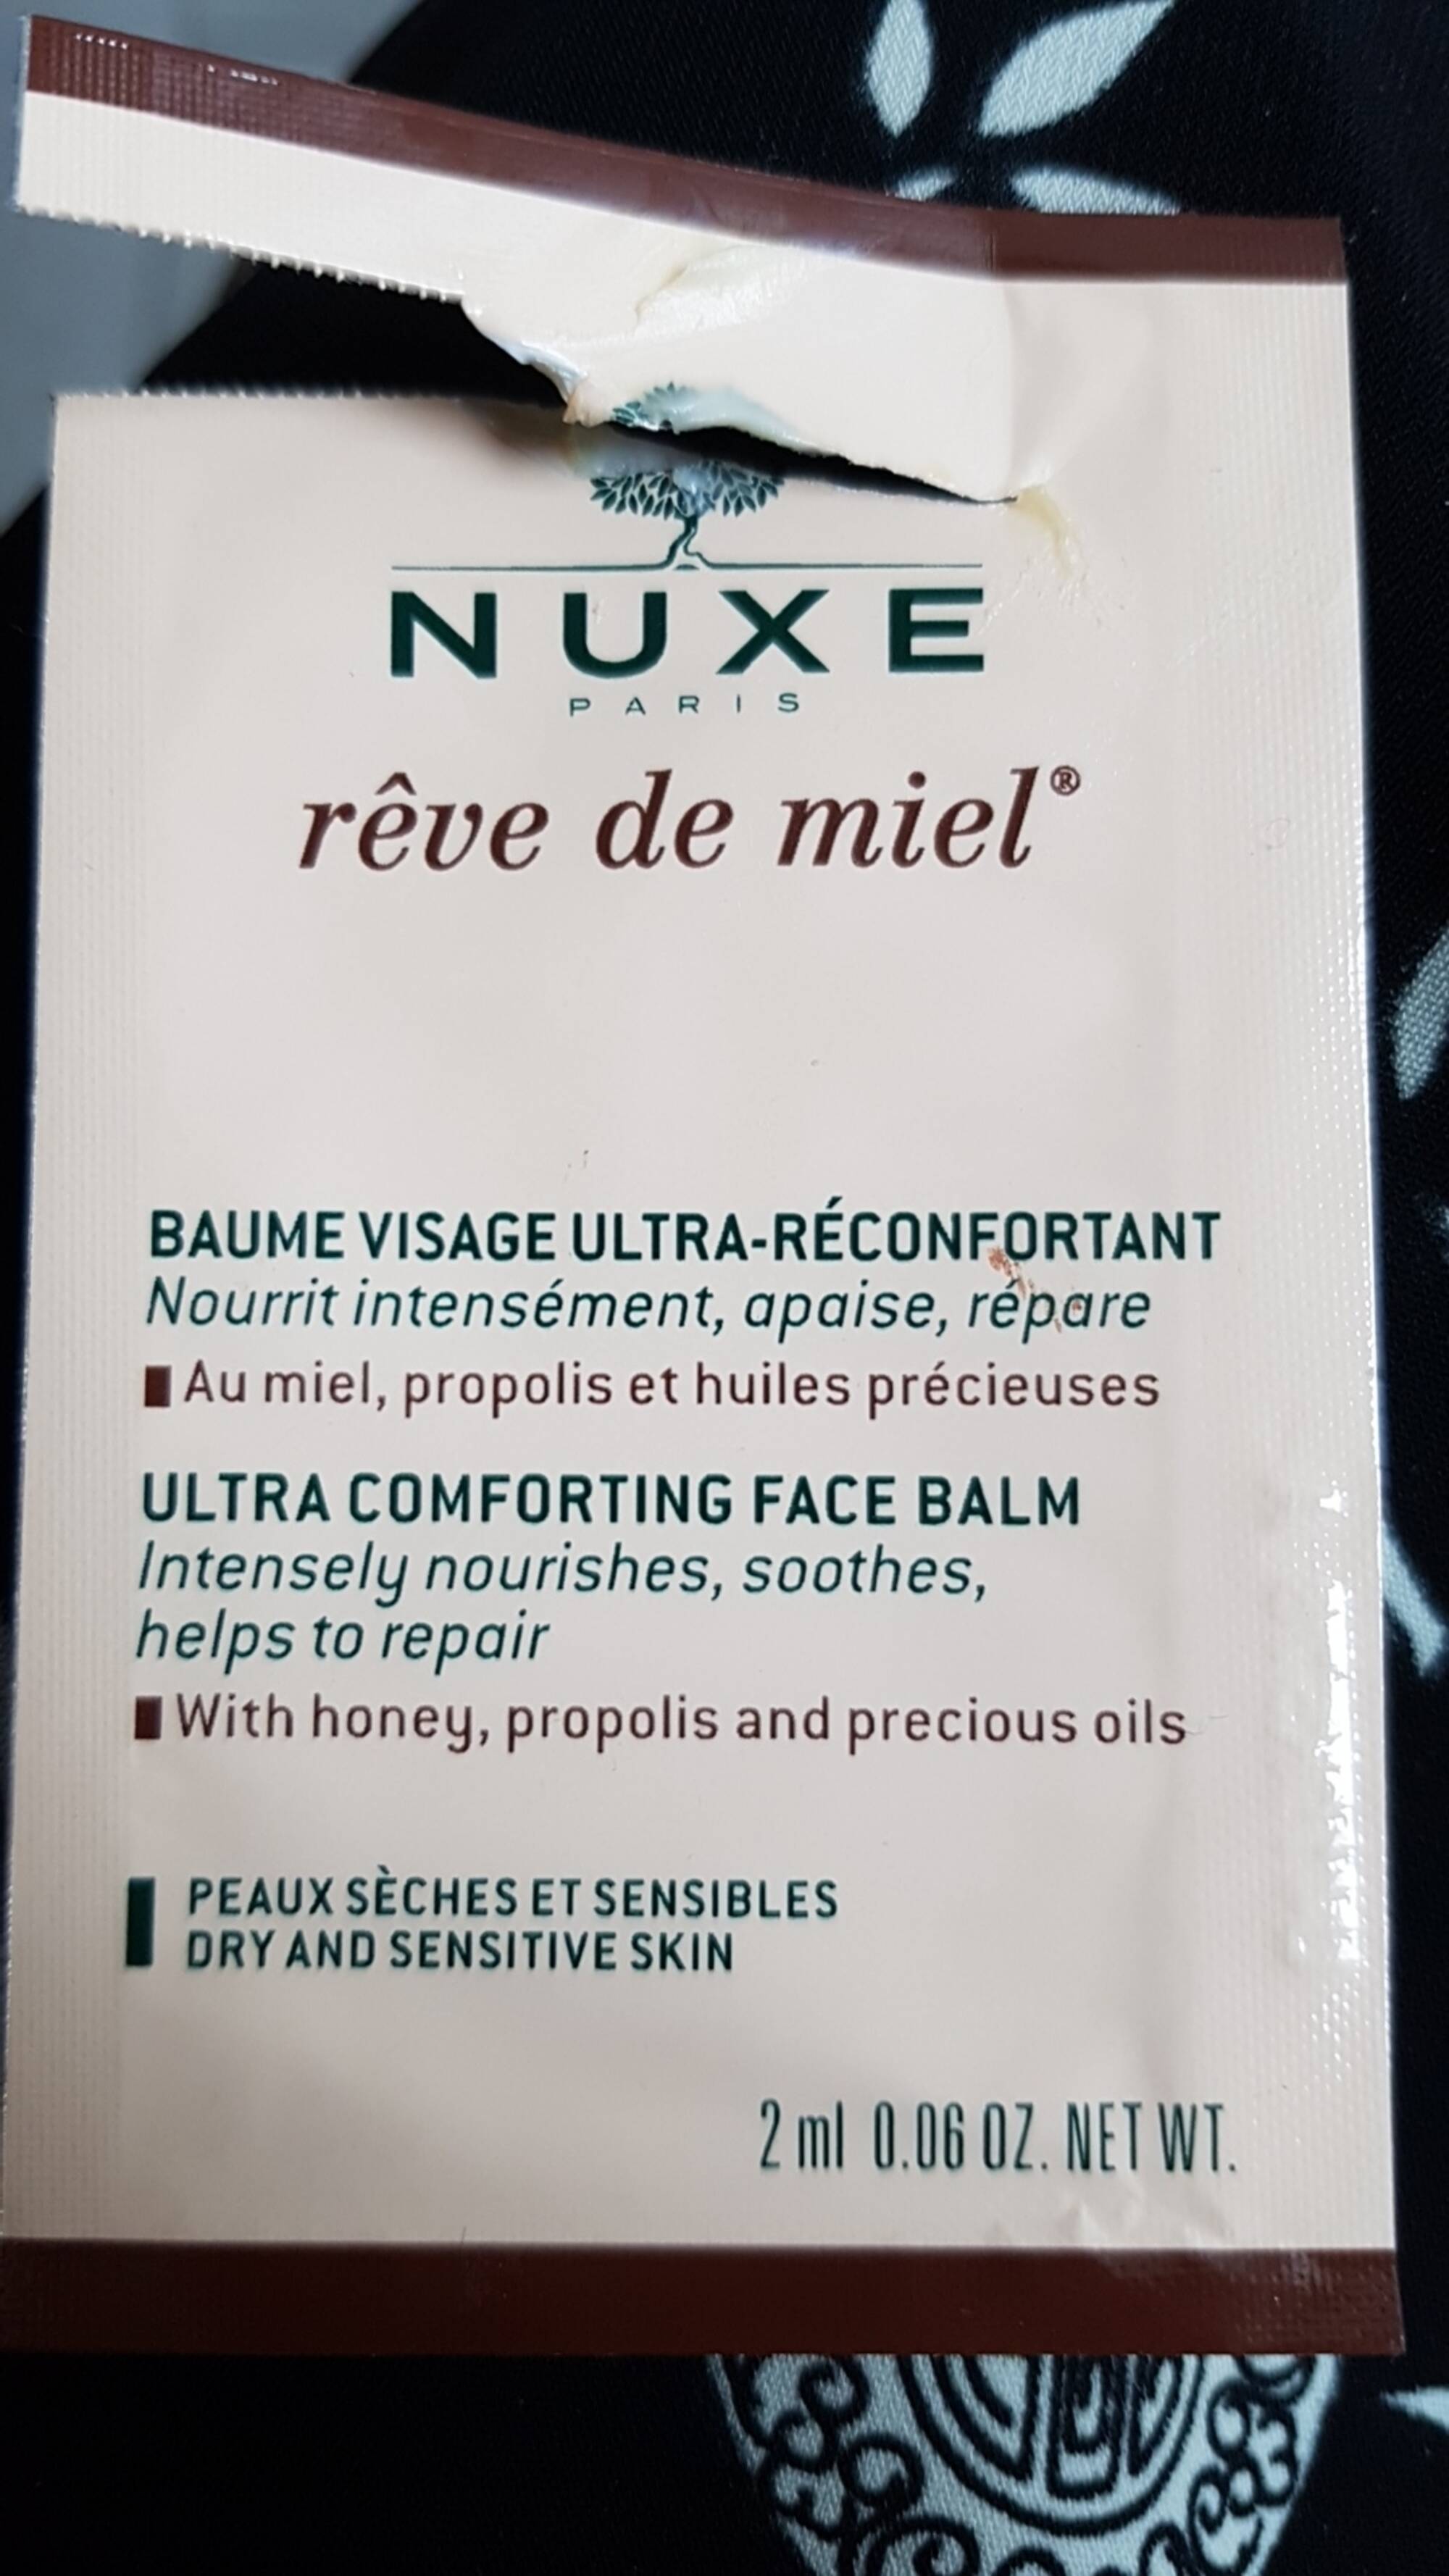 NUXE - Rêve de miel - Baume visage ultra-réconfortant